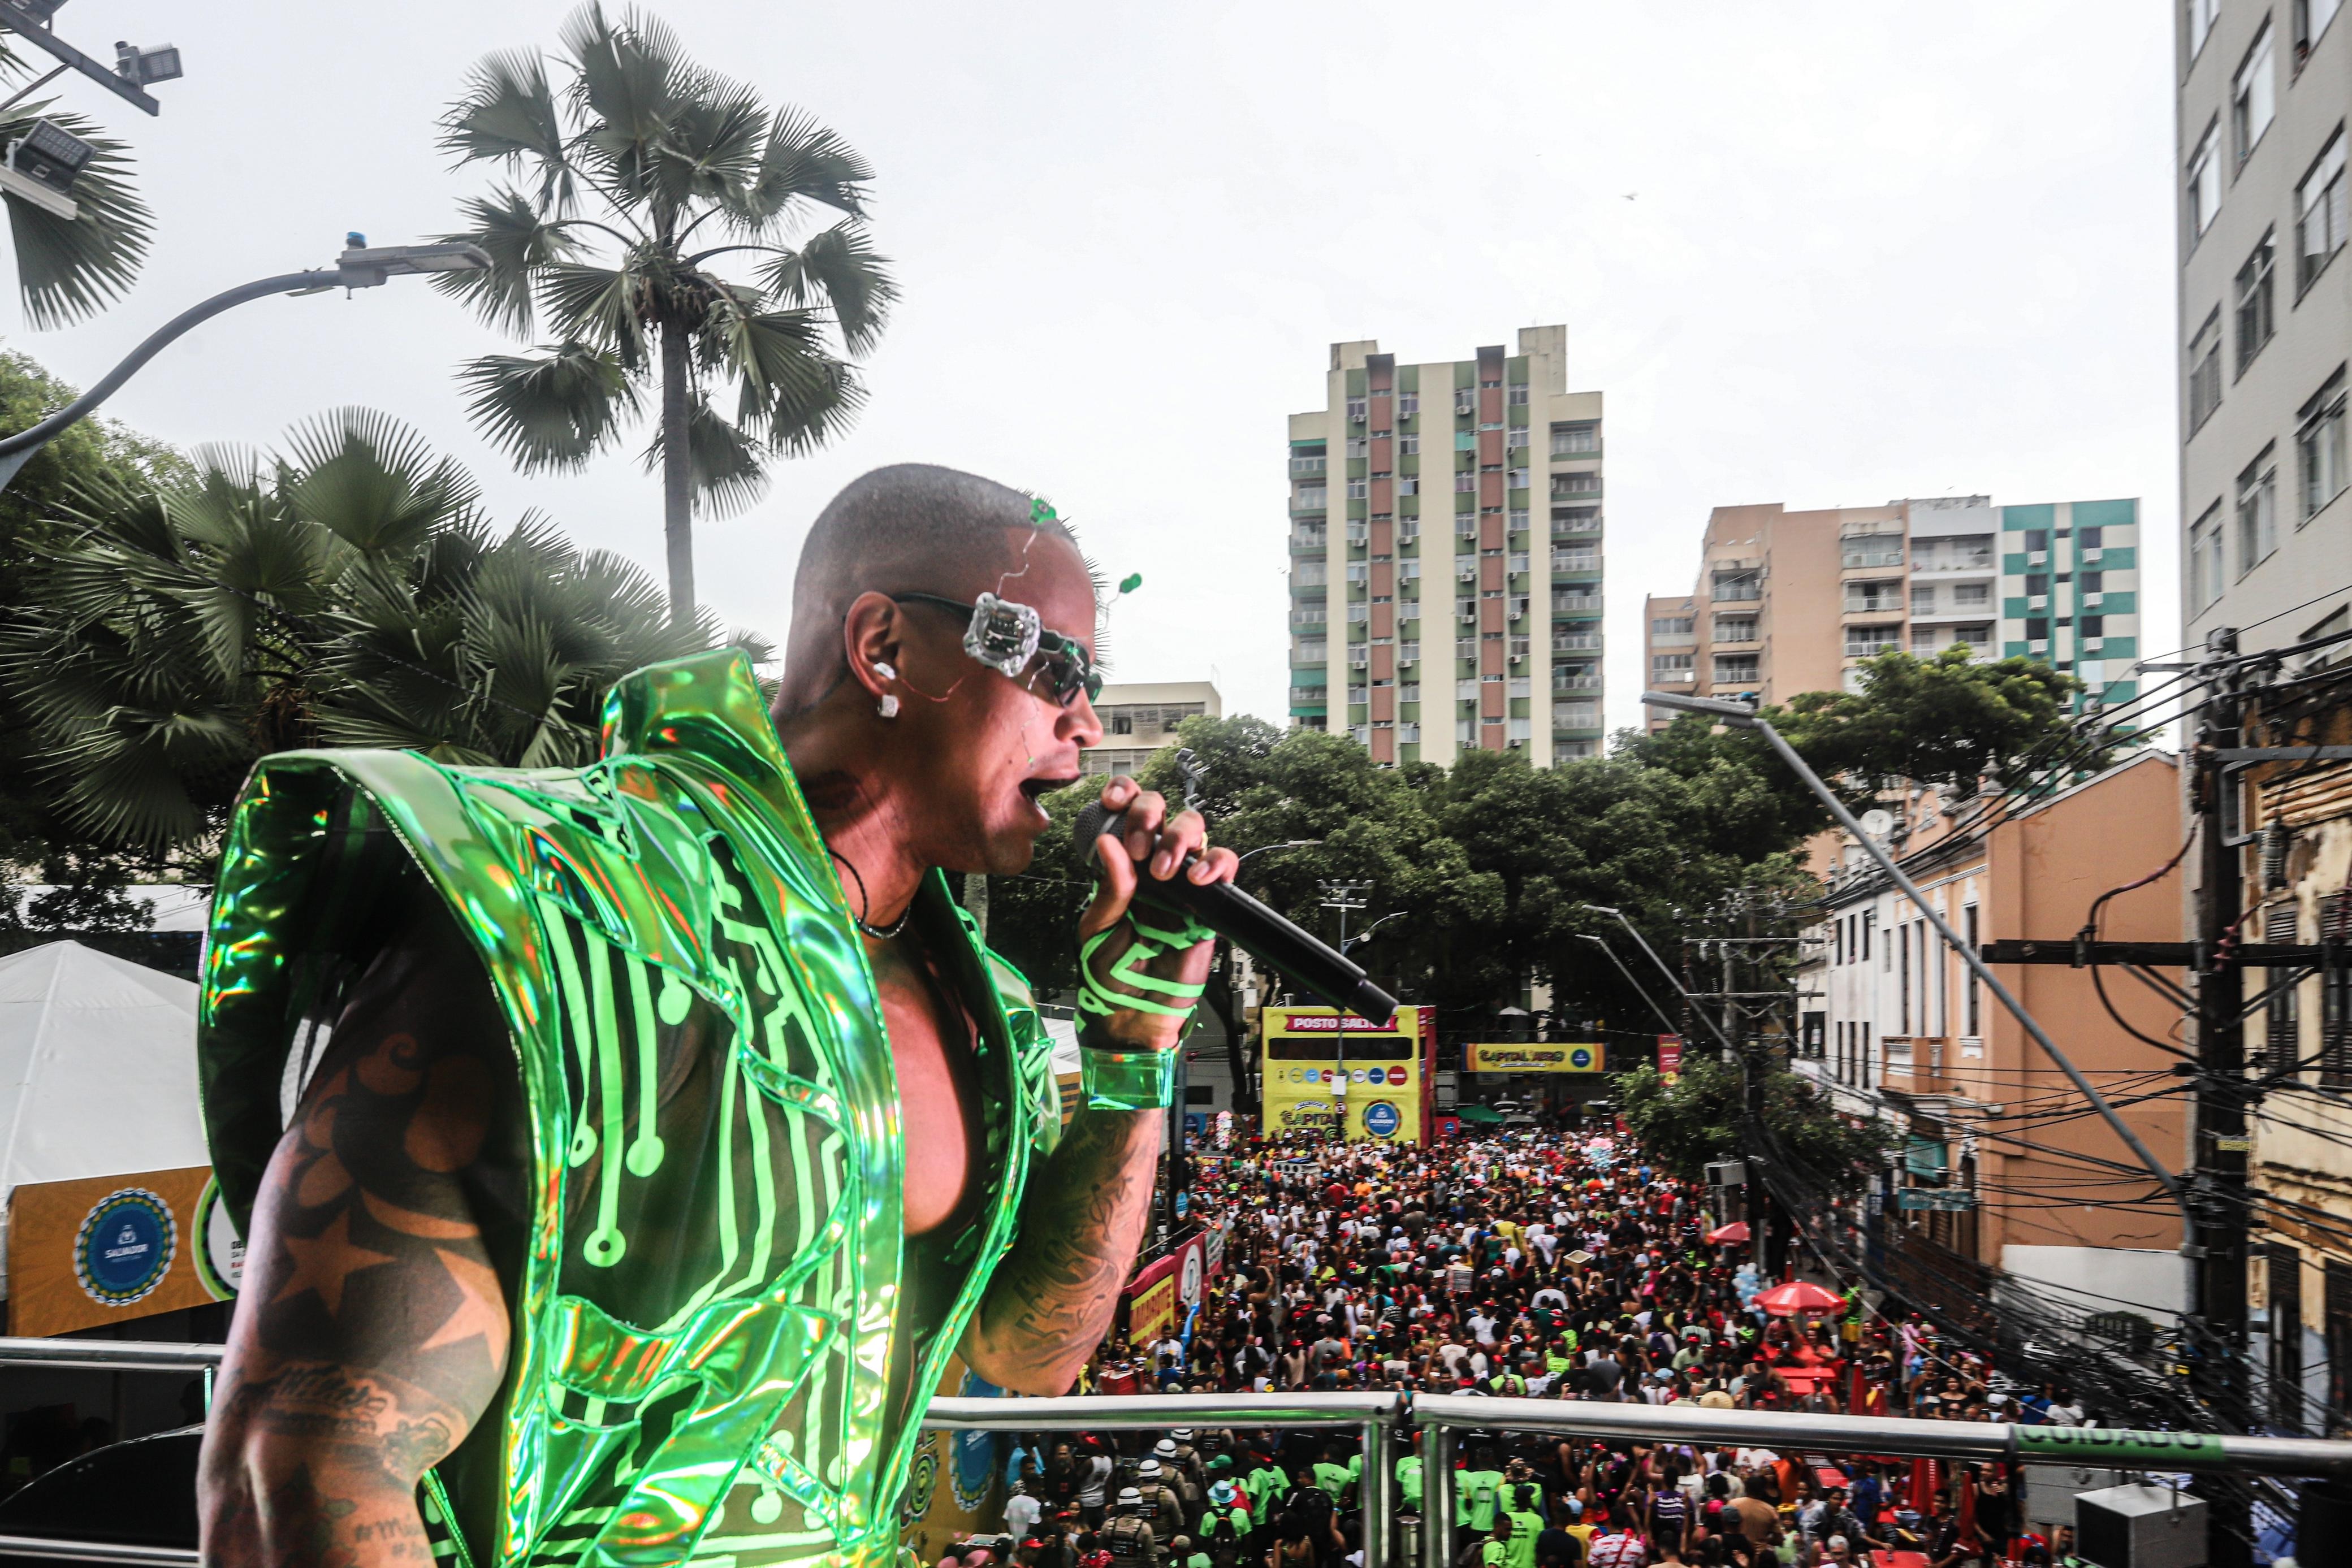 FOTOS: confira as imagens do carnaval de Salvador neste domingo